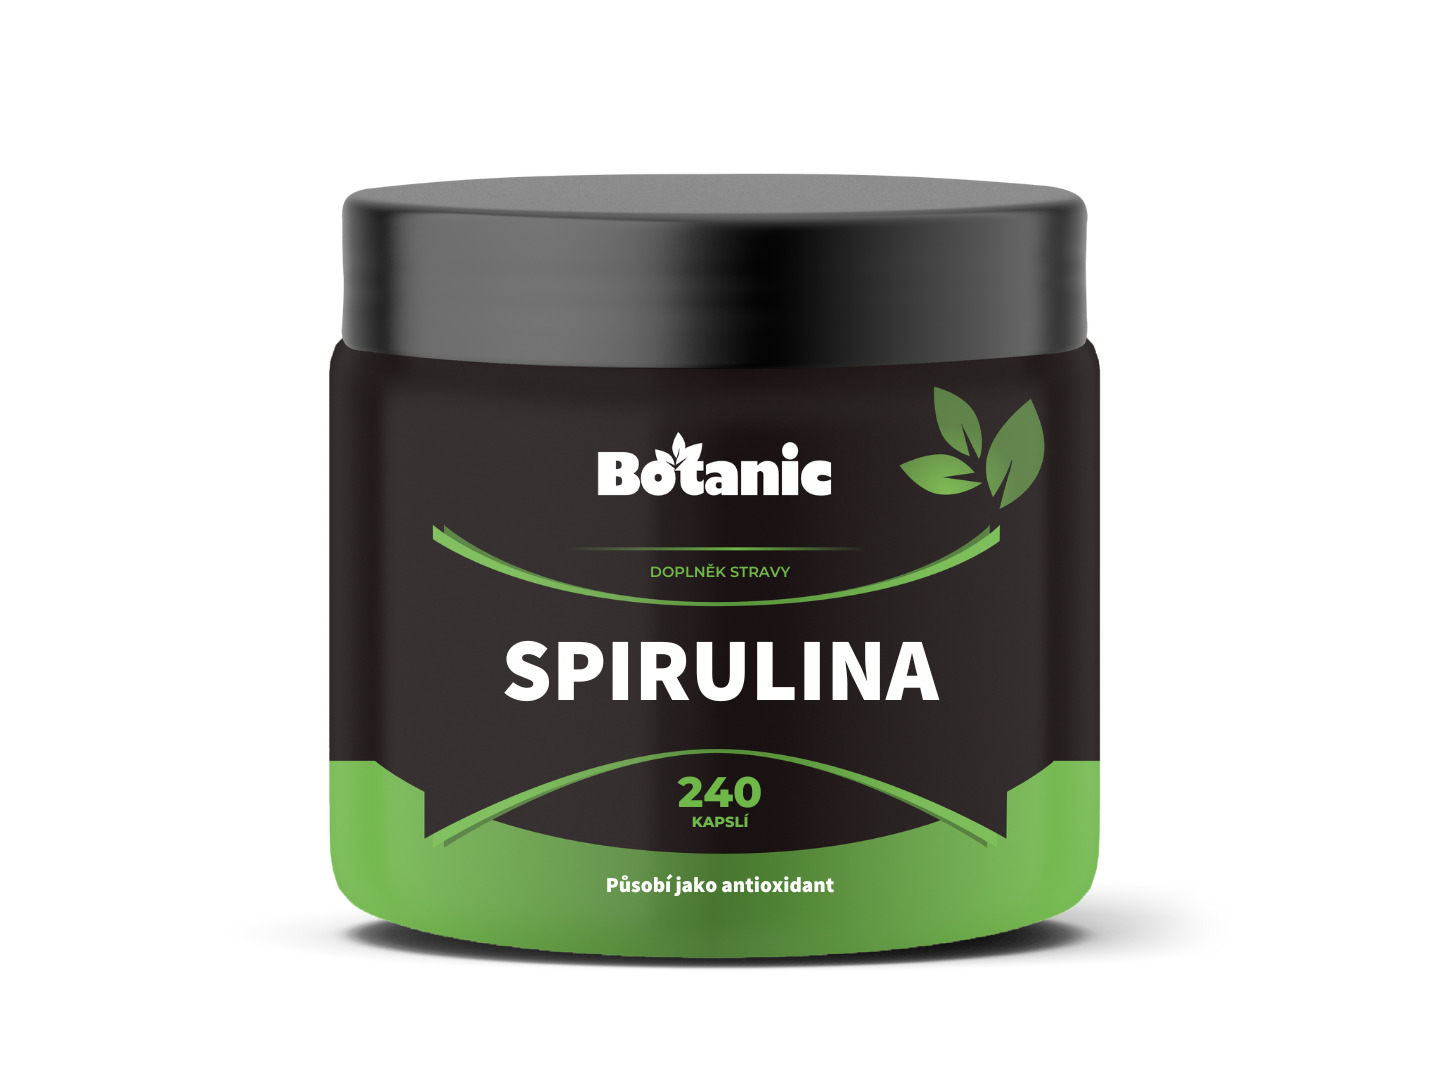 Botanic Spirulina - Prášek ze sinice v kapslích 240kap.